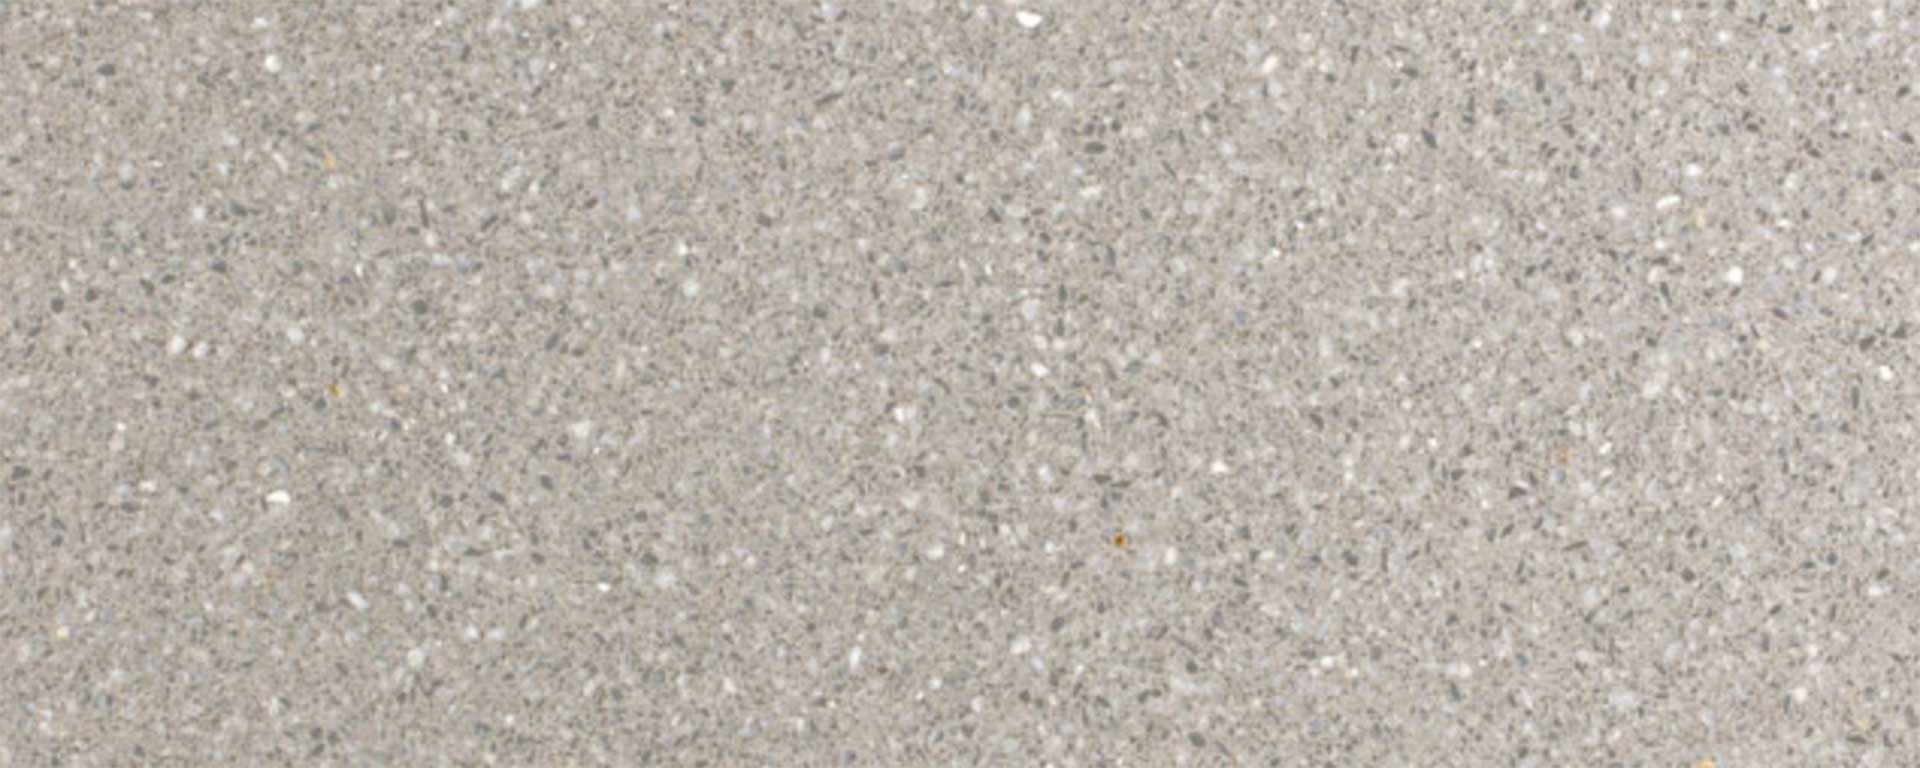 MMDA-011-terrazzo-marmo-cemento